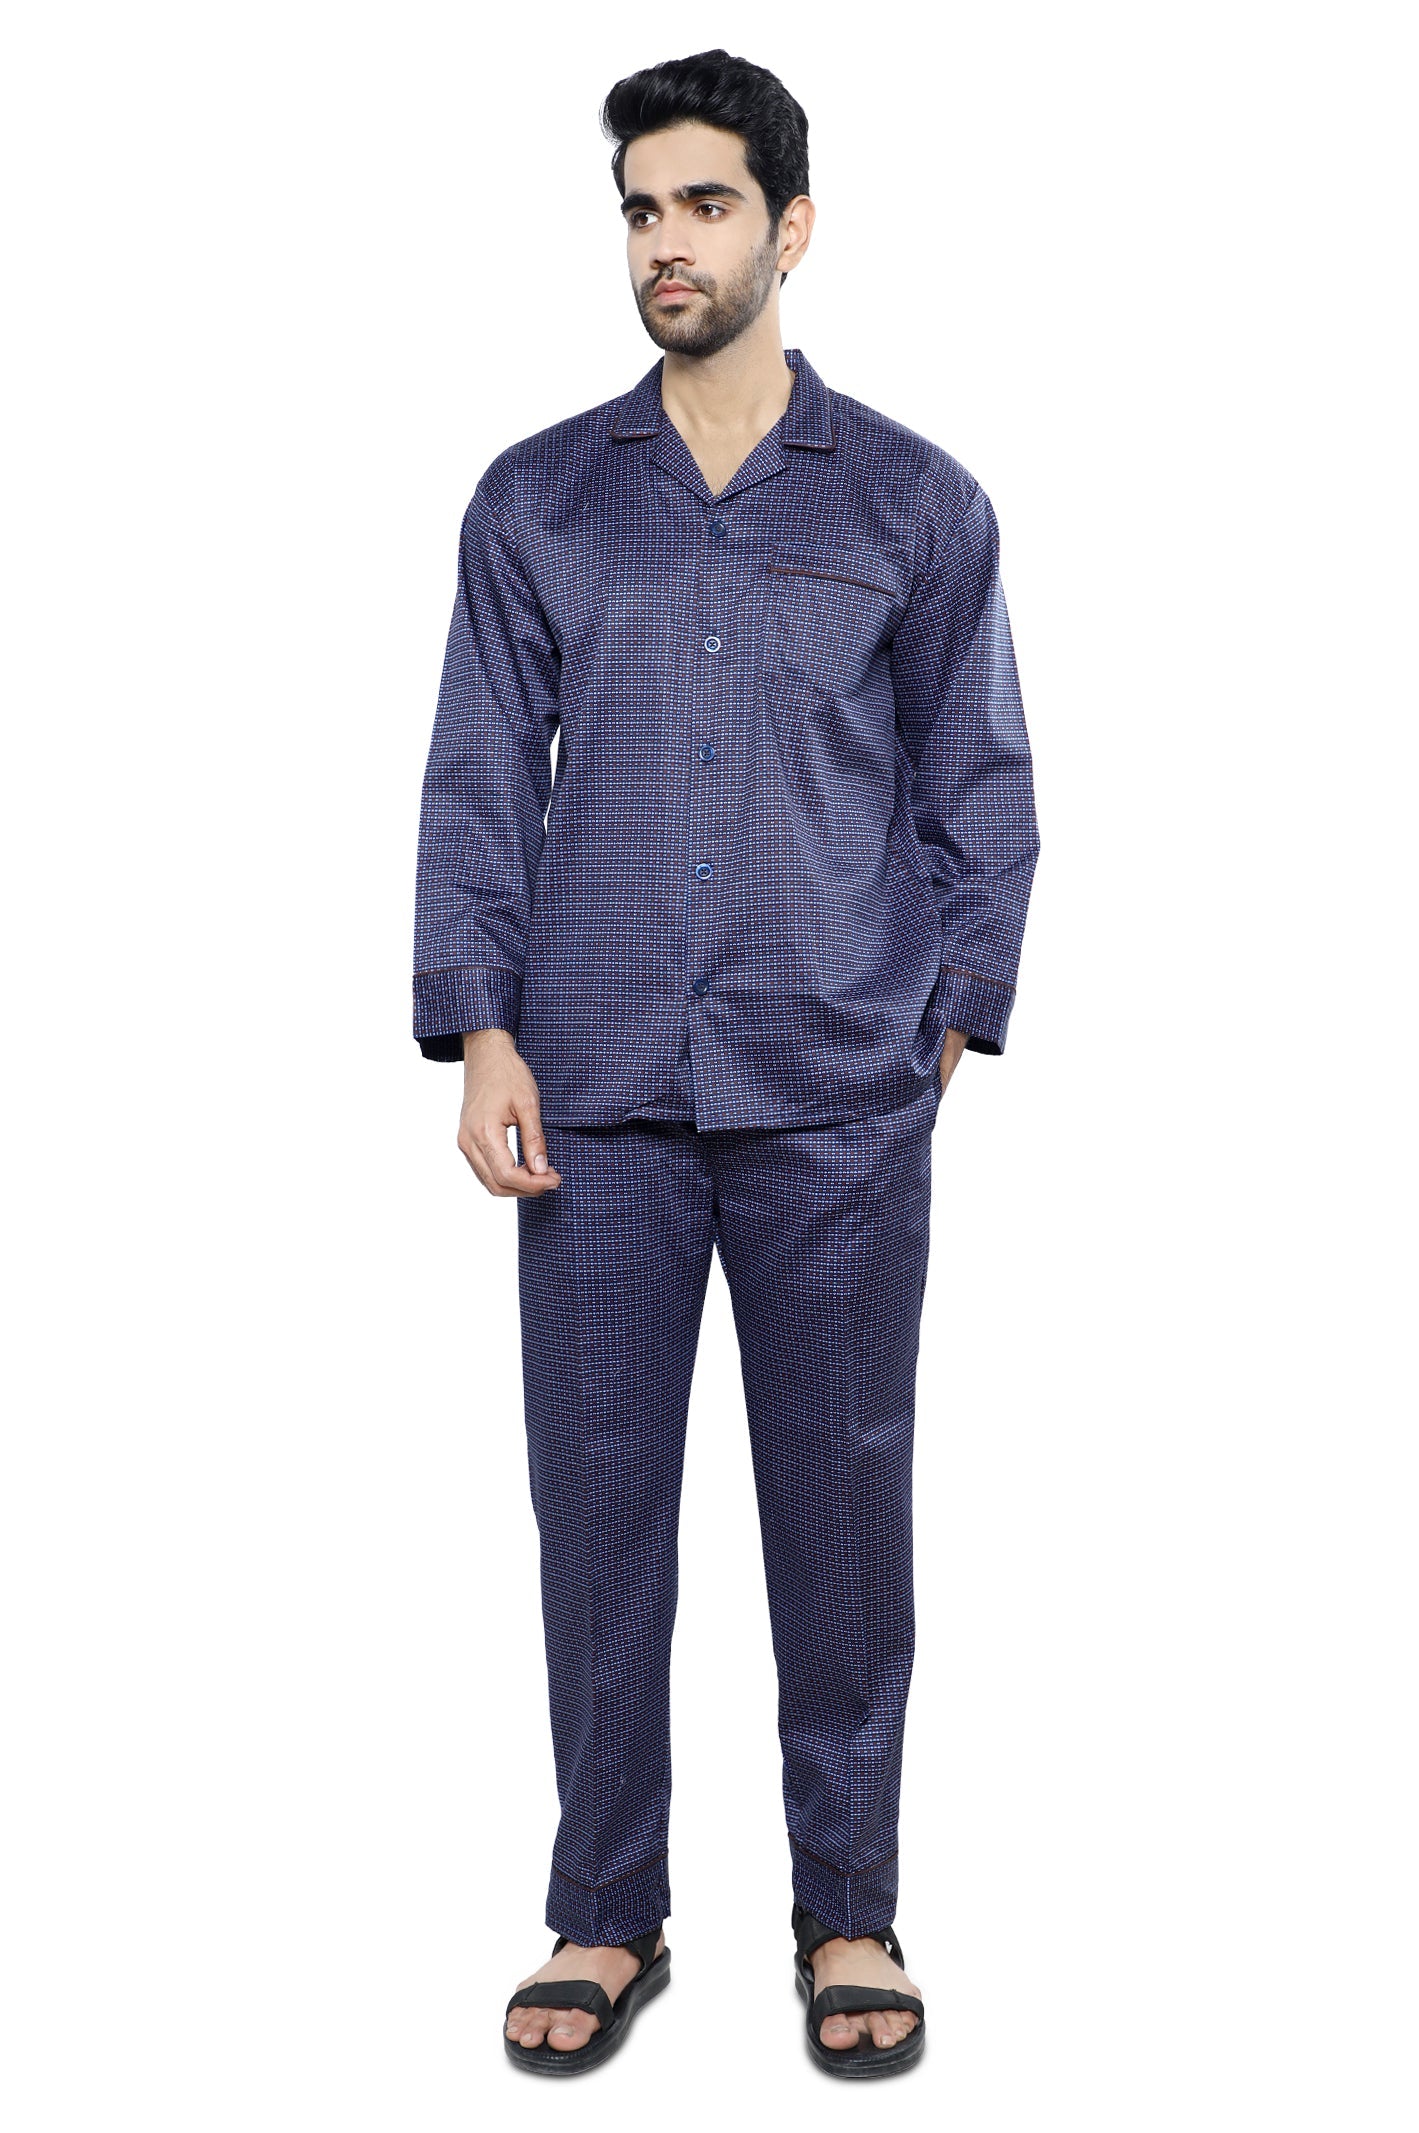 Diner's Night Suit for Men SKU: FNS006-N-BLUE - Diners